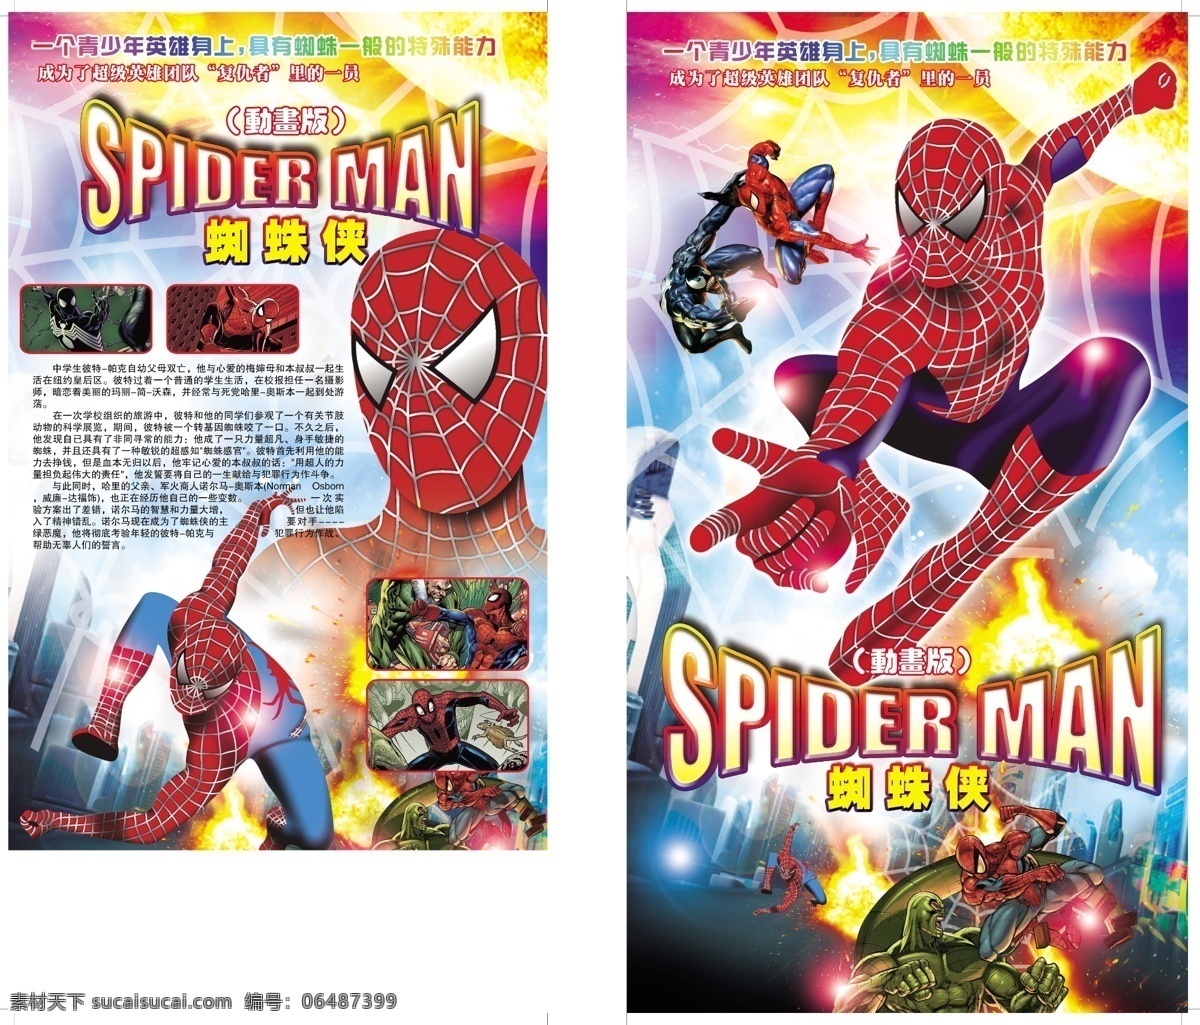 蜘蛛侠 spider man 动画片 电视剧 娱乐 百科psd 广告设计模板 源文件